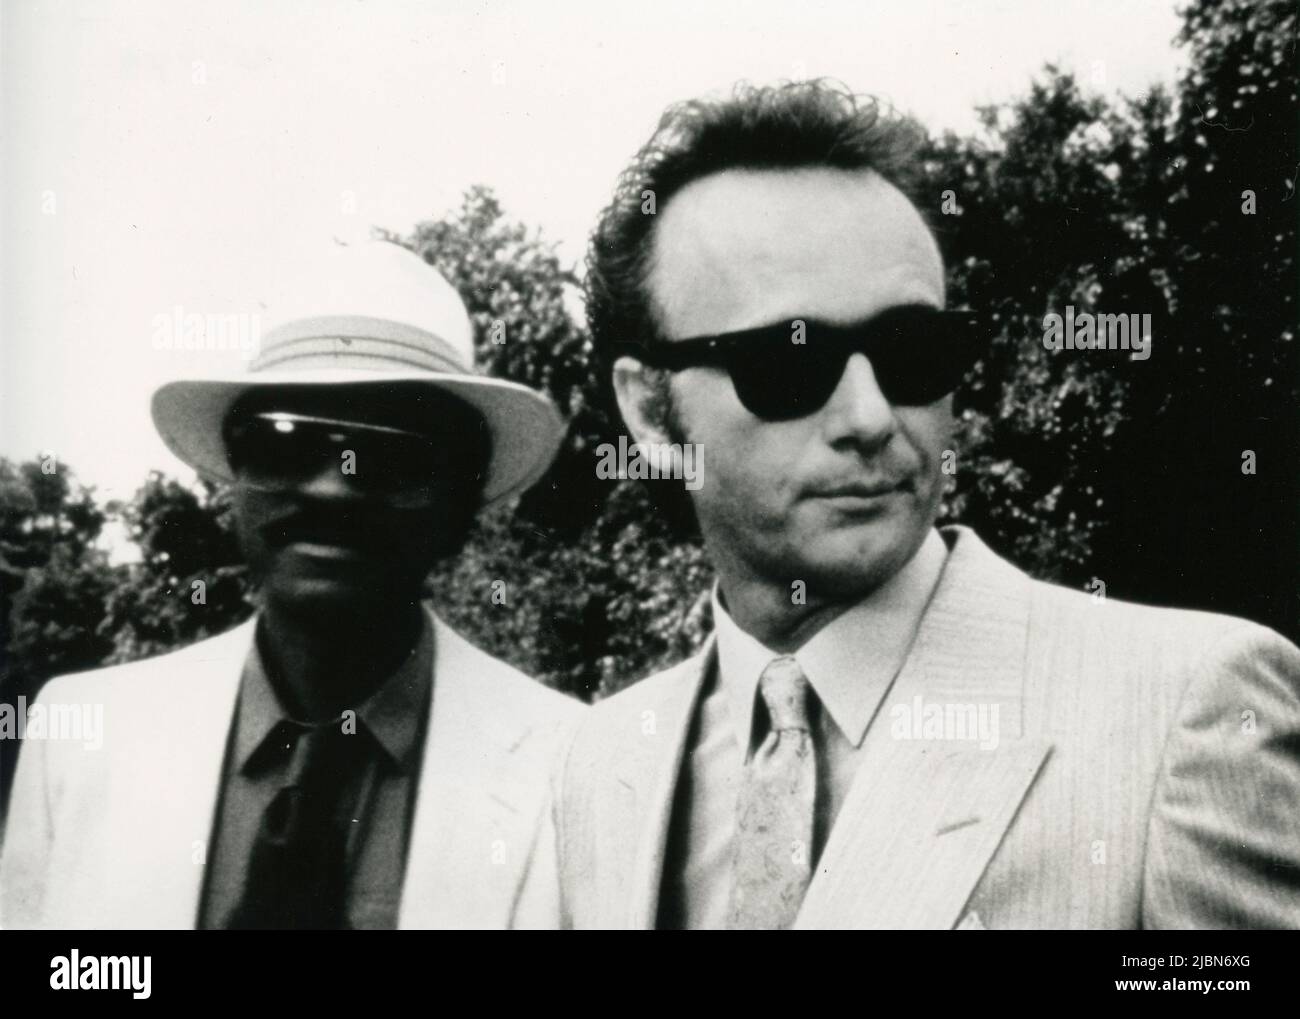 Les acteurs américains Billy Dee Williams et Anthony Geary (à droite) dans le film The Imposter, USA 1984 Banque D'Images